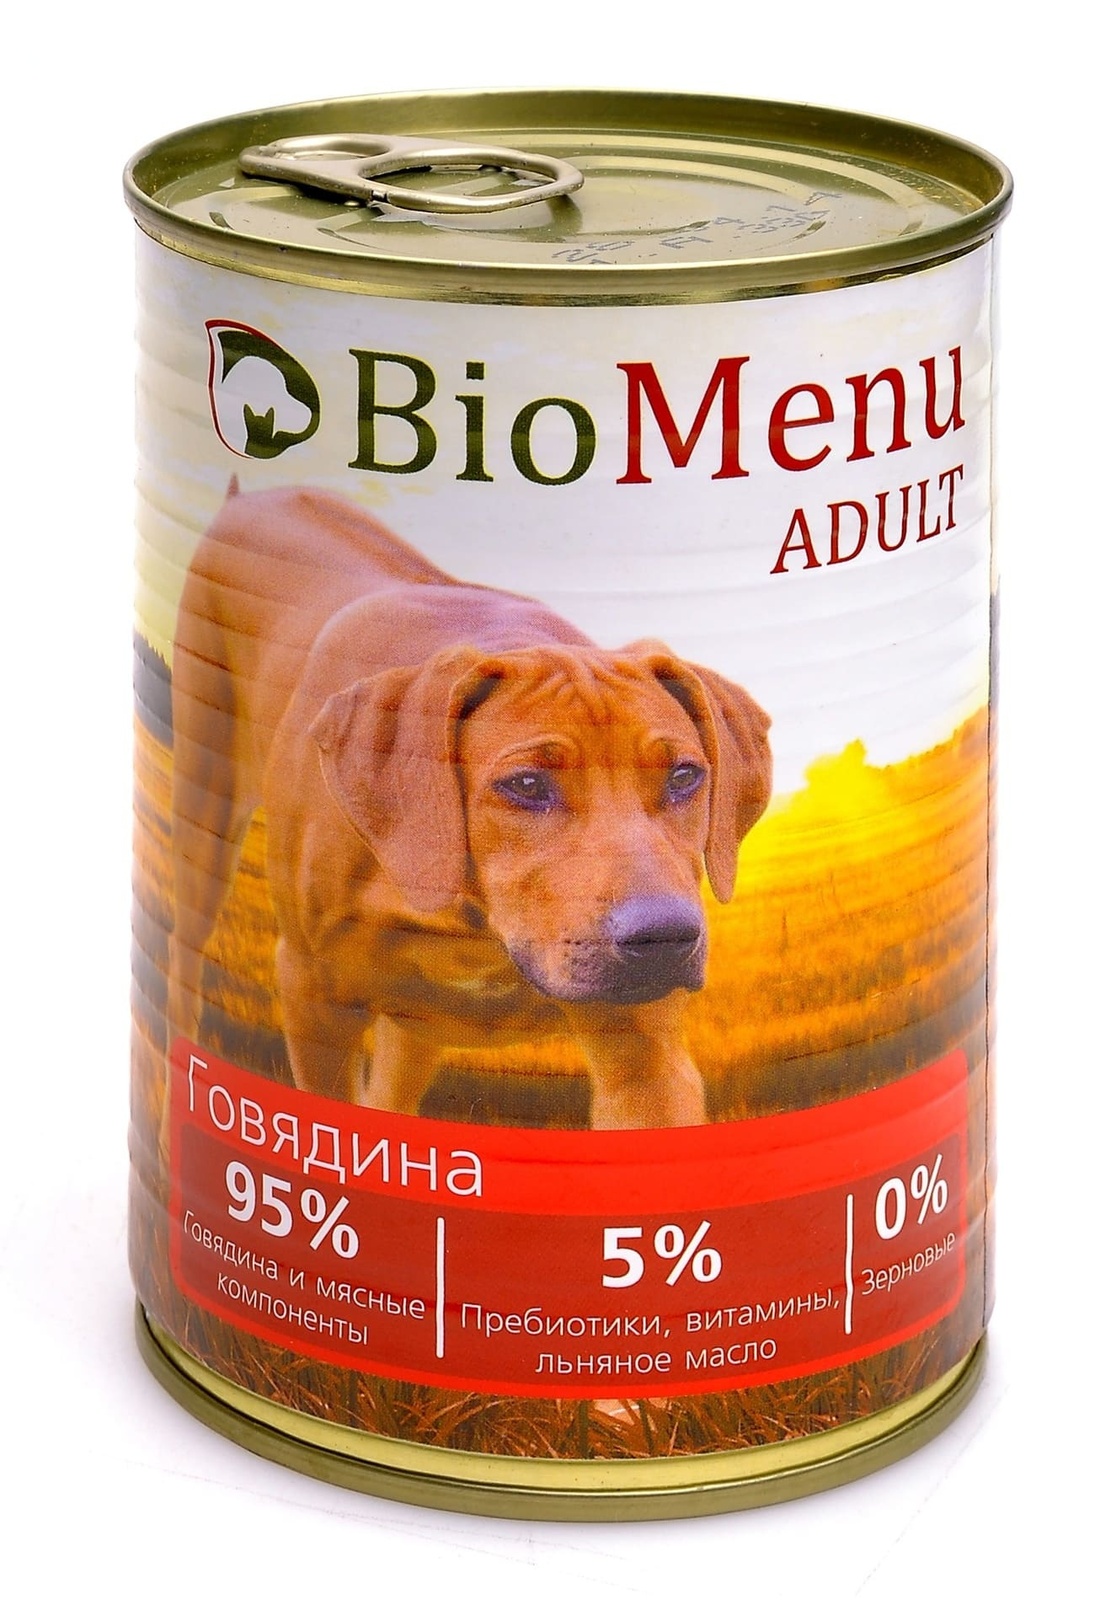 BioMenu BioMenu консервы для собак с говядиной (410 г) консервы biomenu adult для собак цыпленок с ананасами 95% мясо 100гр